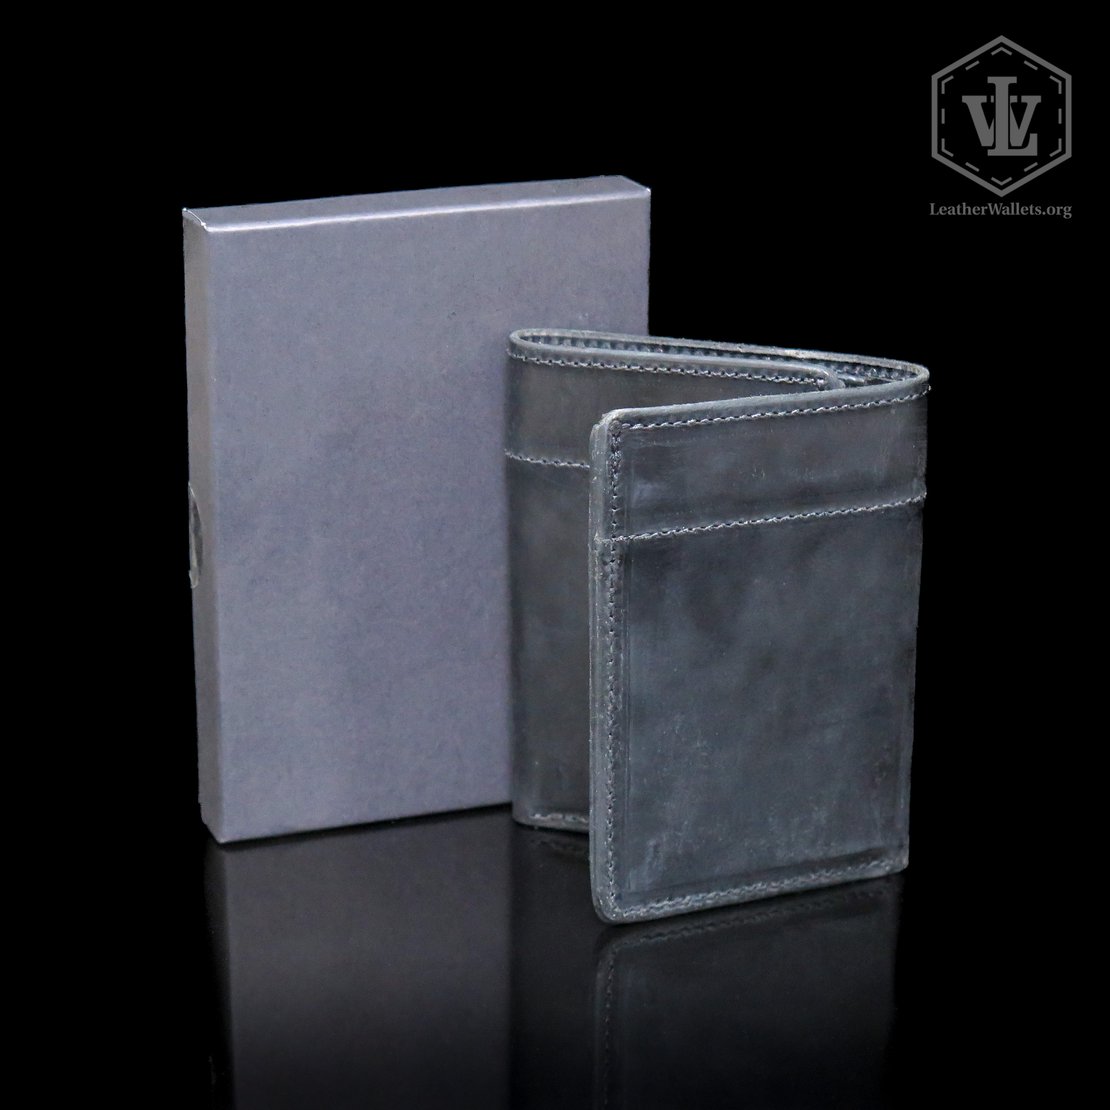 Handmade Front Pocket Wallet - Hanks Belts